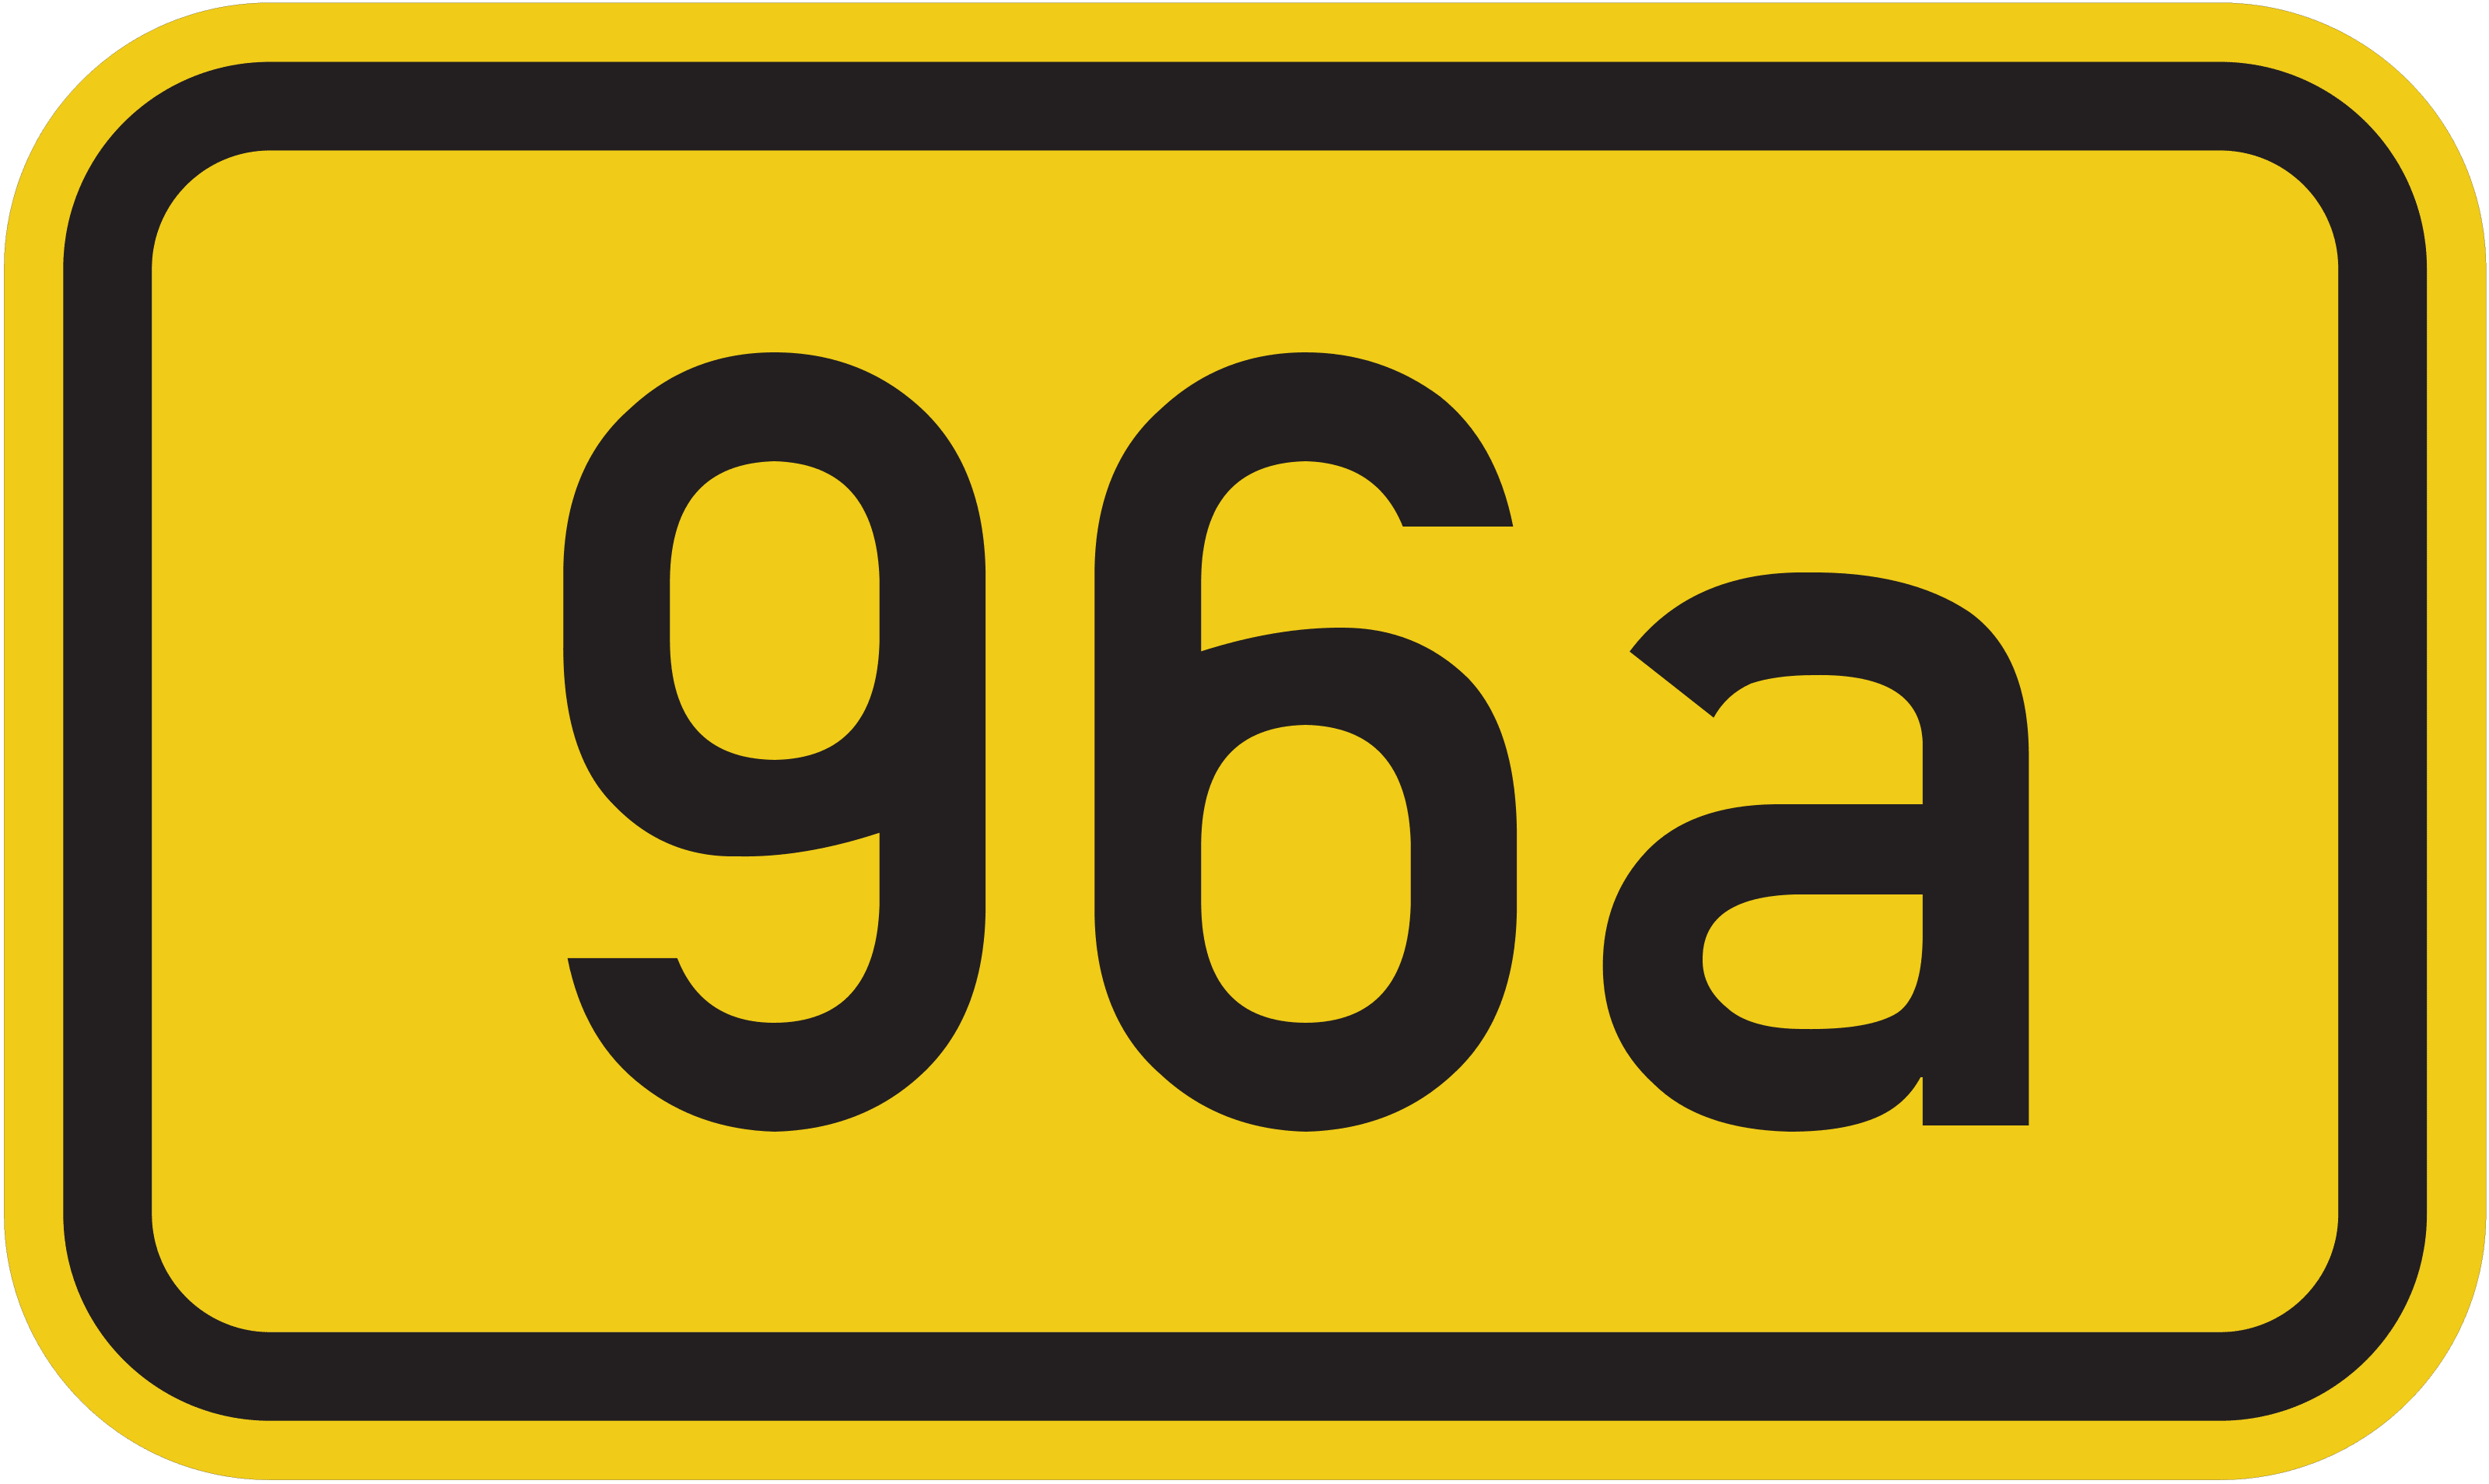 Bundesstraße B 96a